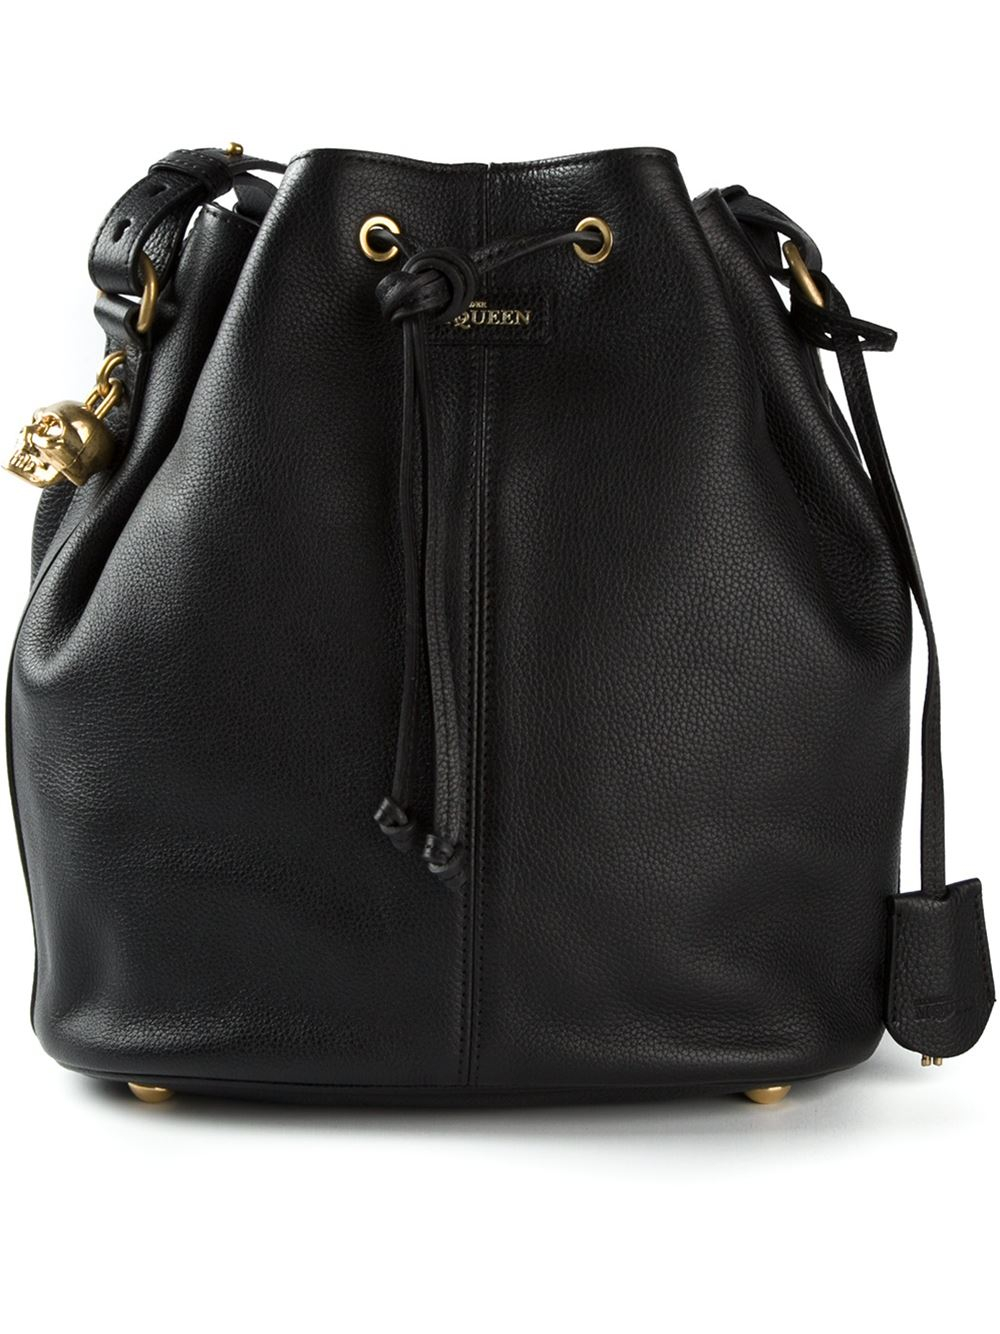 Alexander McQueen Bucket Bag in Black - Lyst